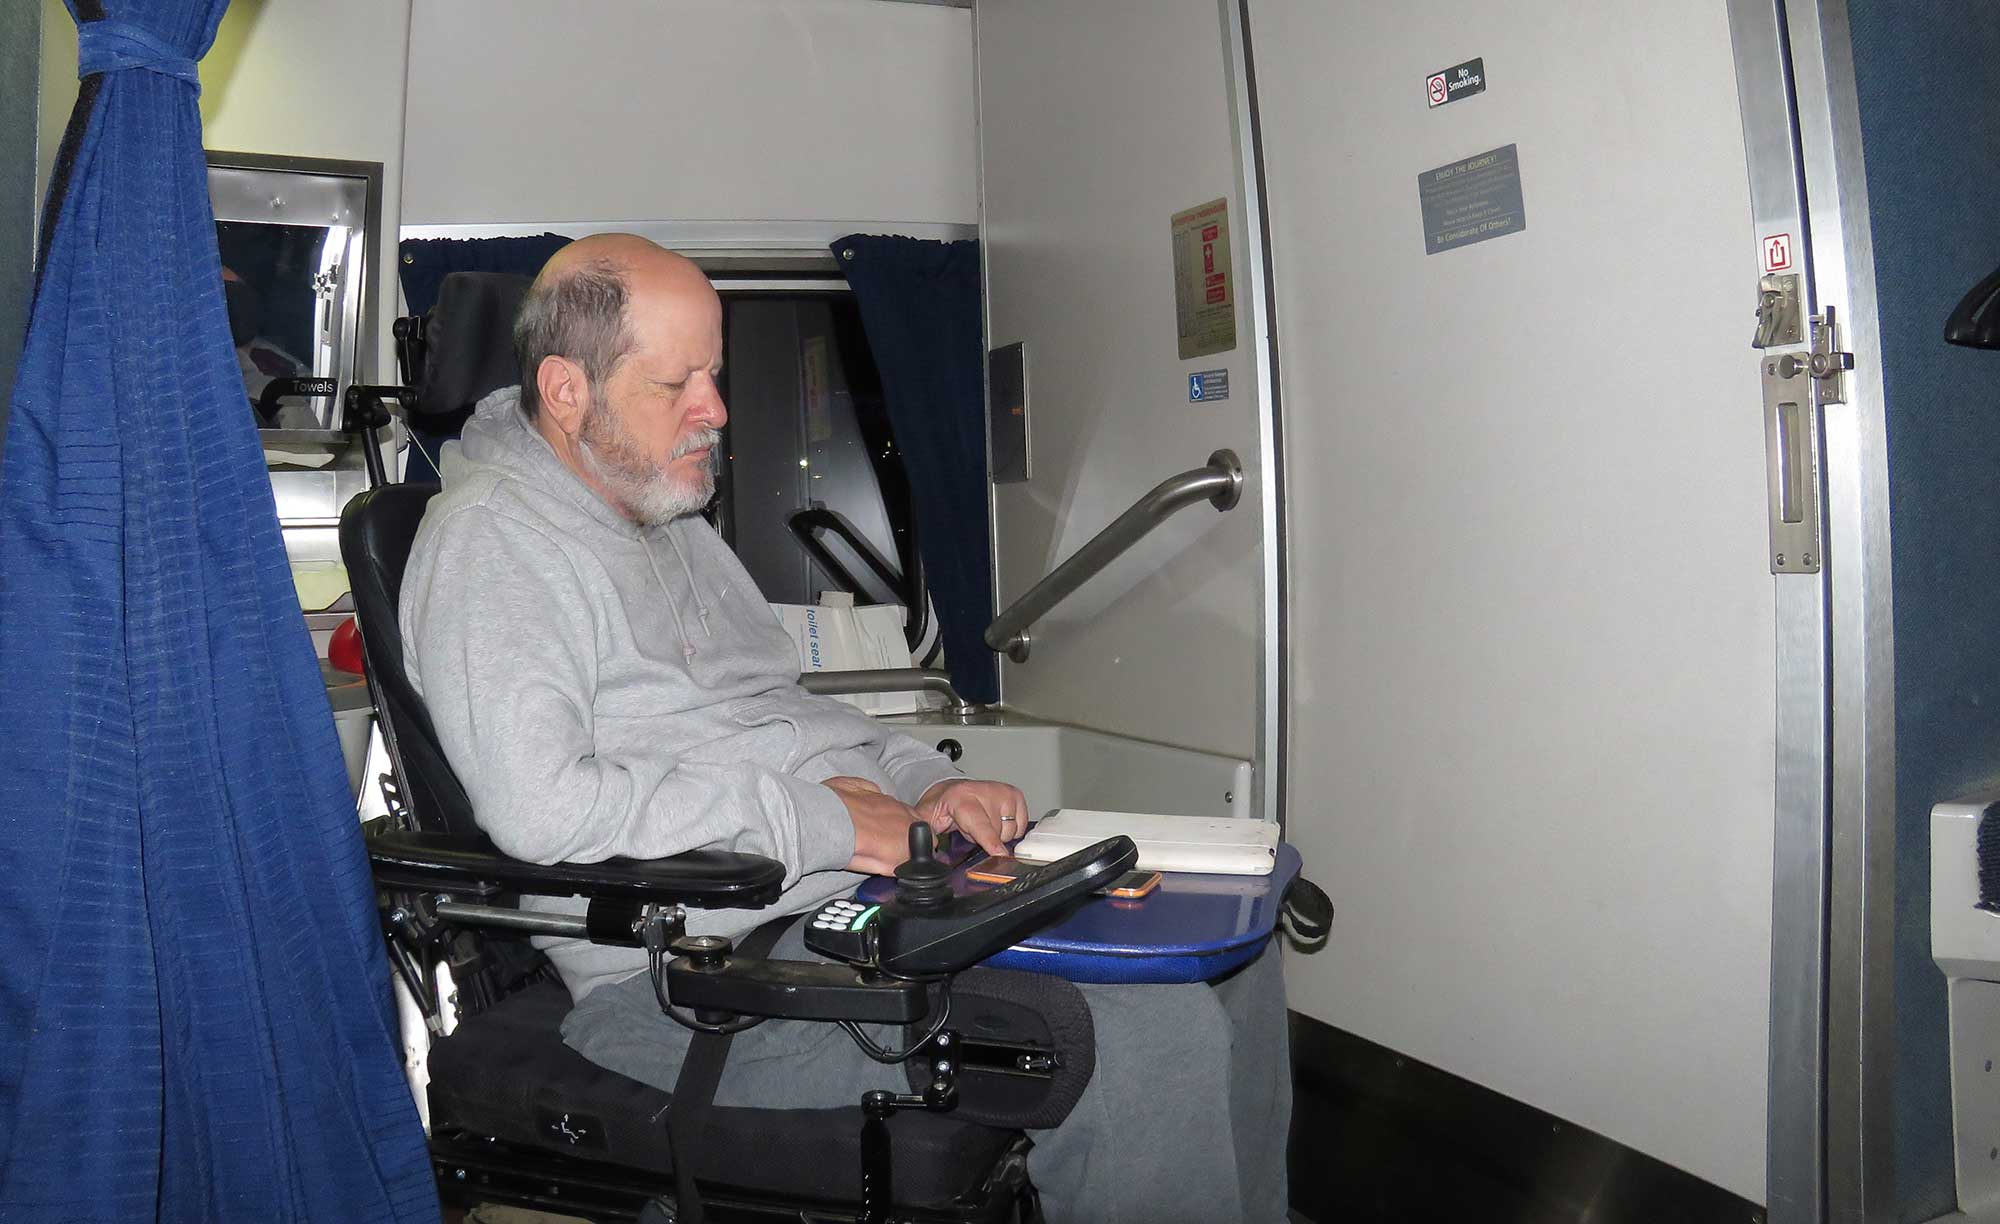 ADA accessible Amtrak sleeping room